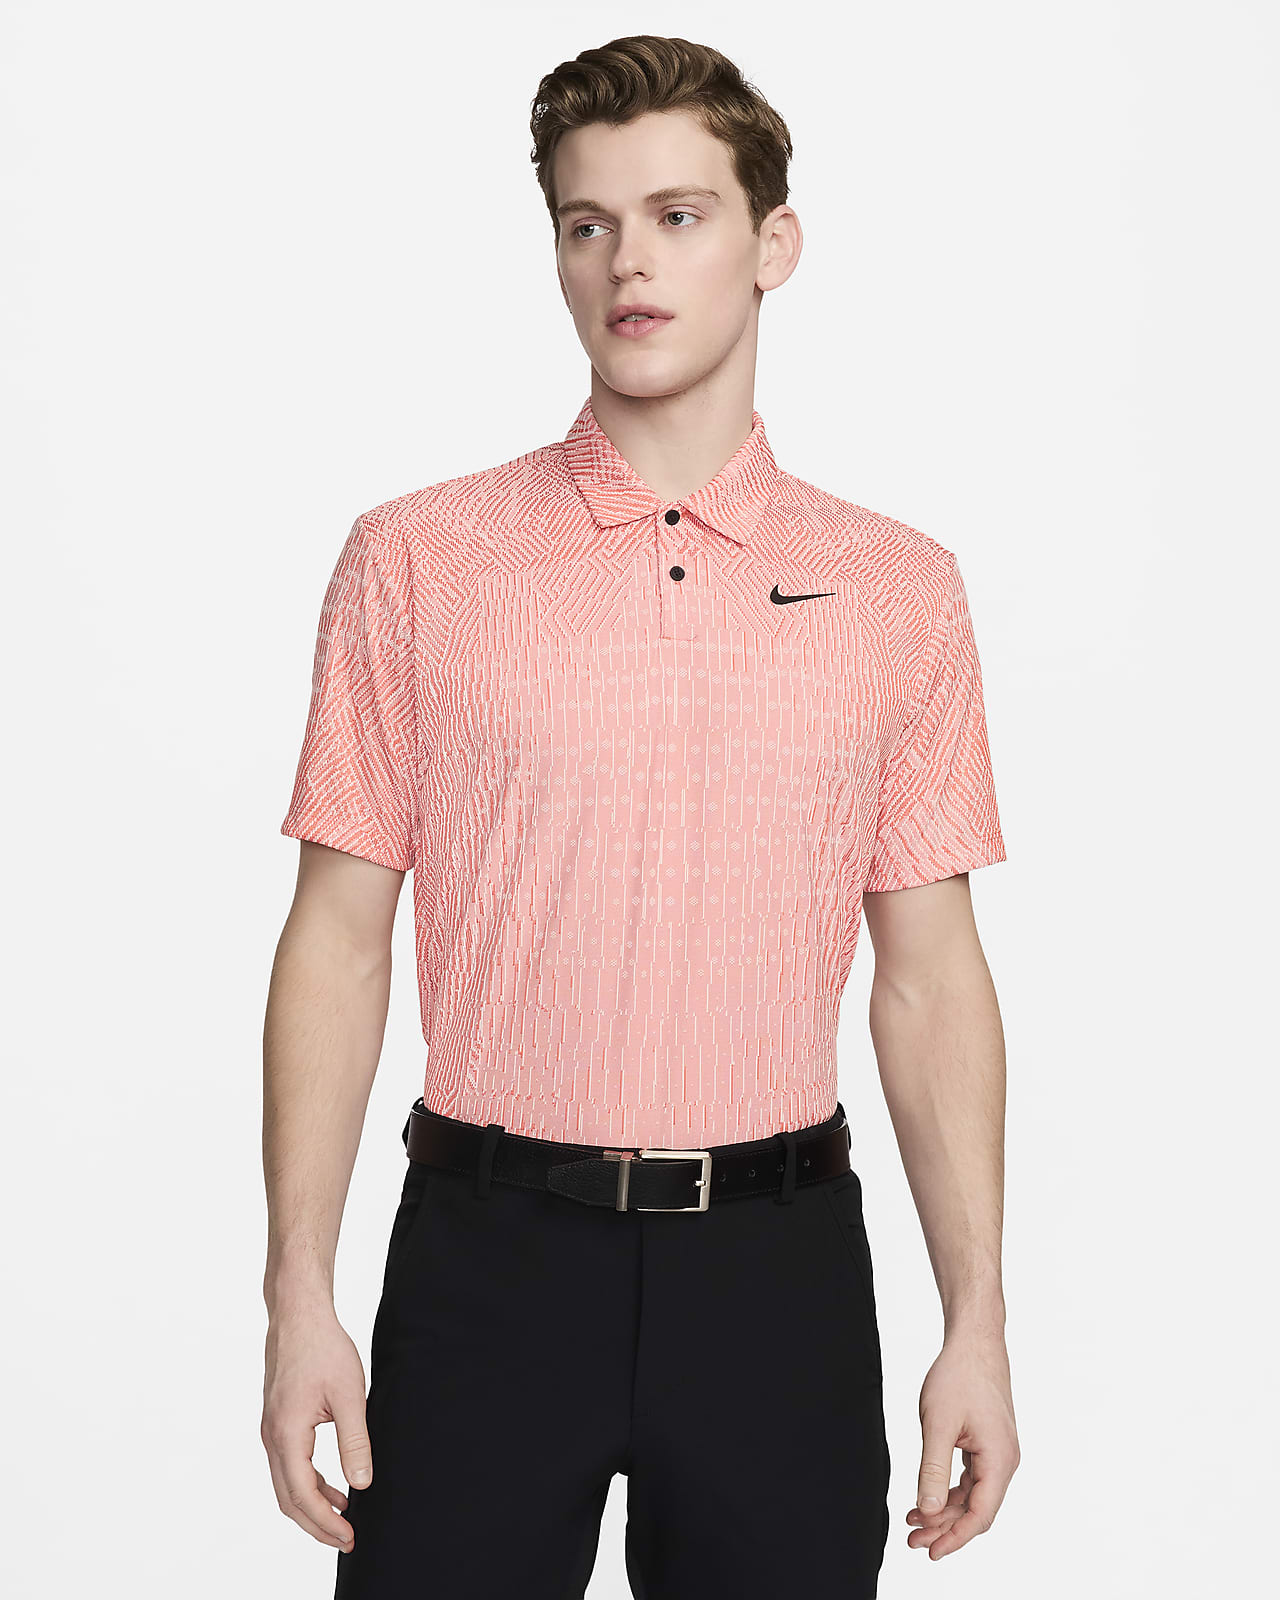 Męska koszulka polo do golfa Dri-FIT ADV Nike Tour